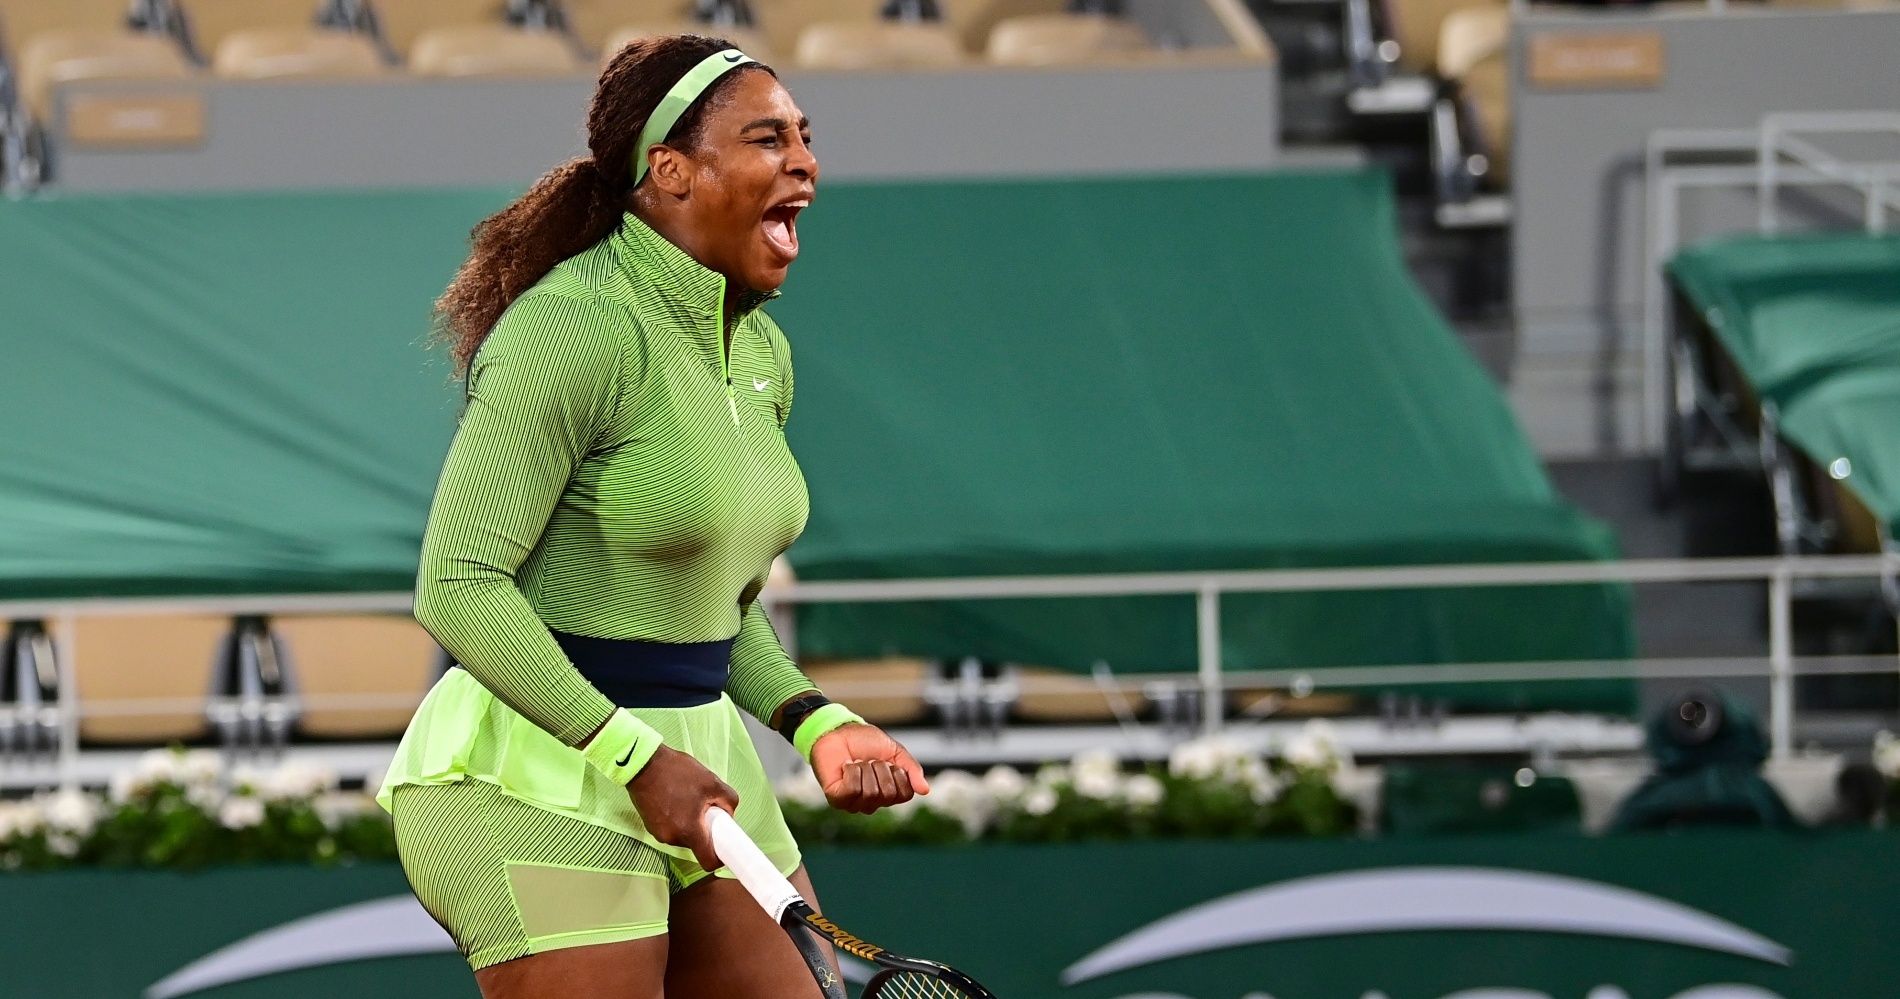 Serena Williams Roland Garros 2021 Panoramic